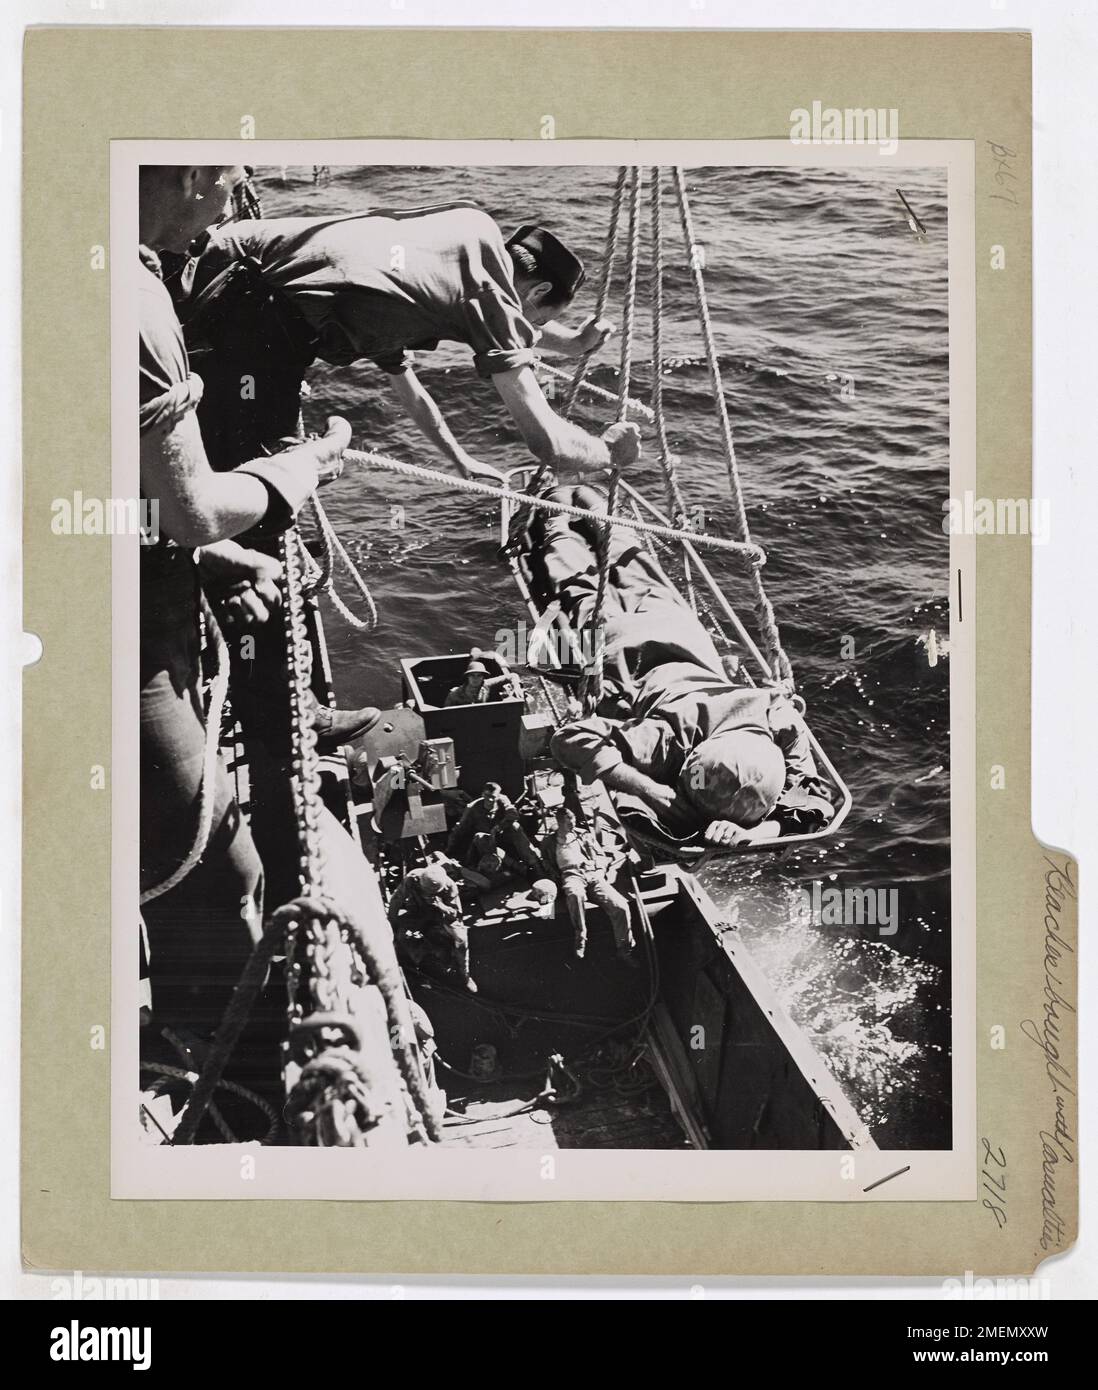 Feindliche Strände Werden Mit Opfern Gekauft. Dieses Bild zeigt ein Opfer, das nach der Schlacht von Guam aus einem Invasionsschiff gehoben wurde. Stockfoto